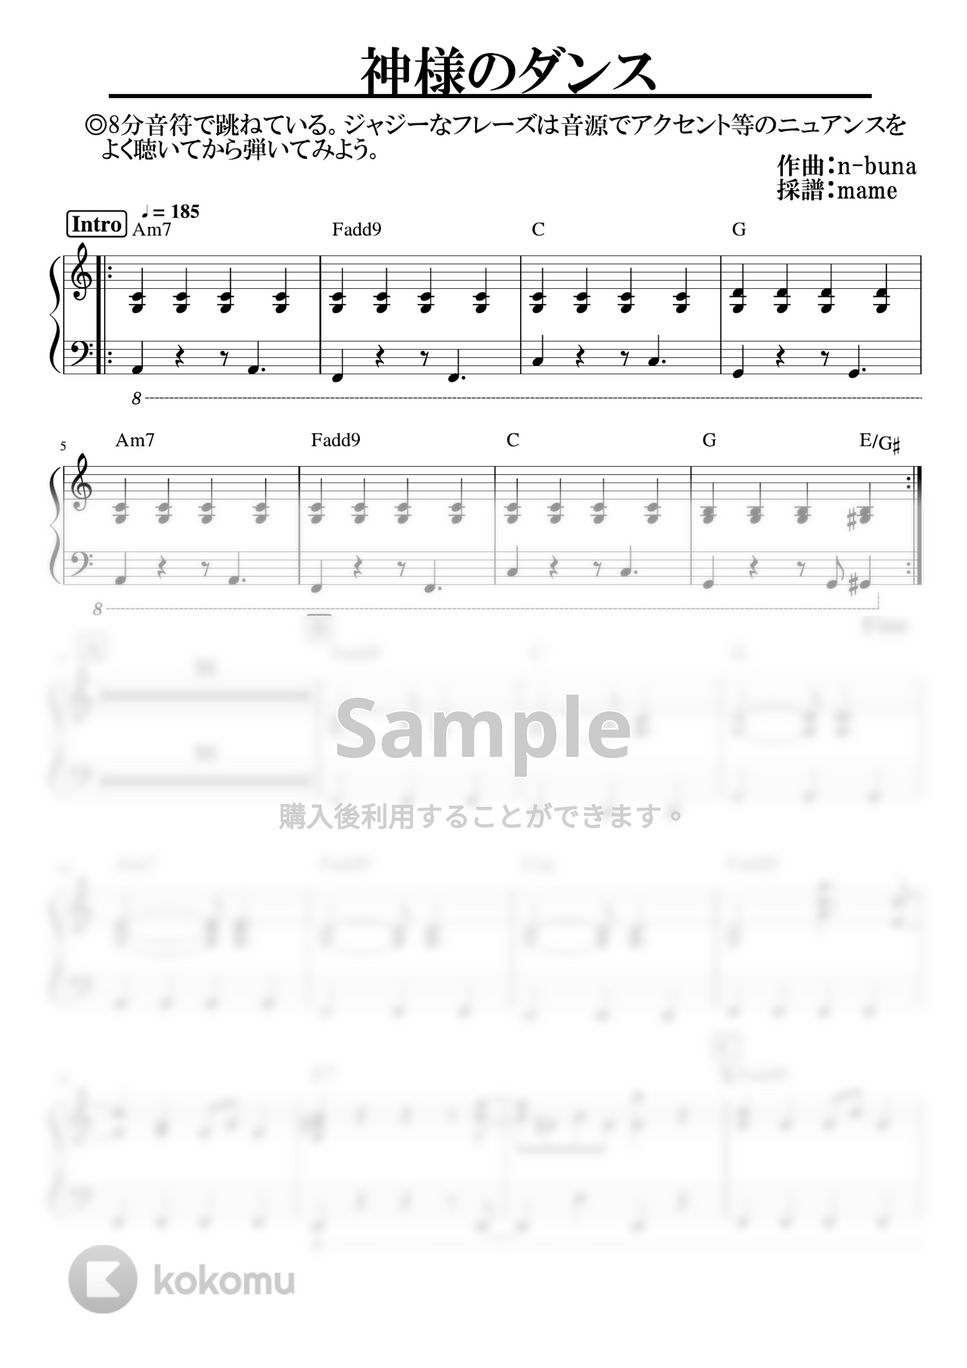 ヨルシカ - 神様のダンス (ピアノパート) by mame